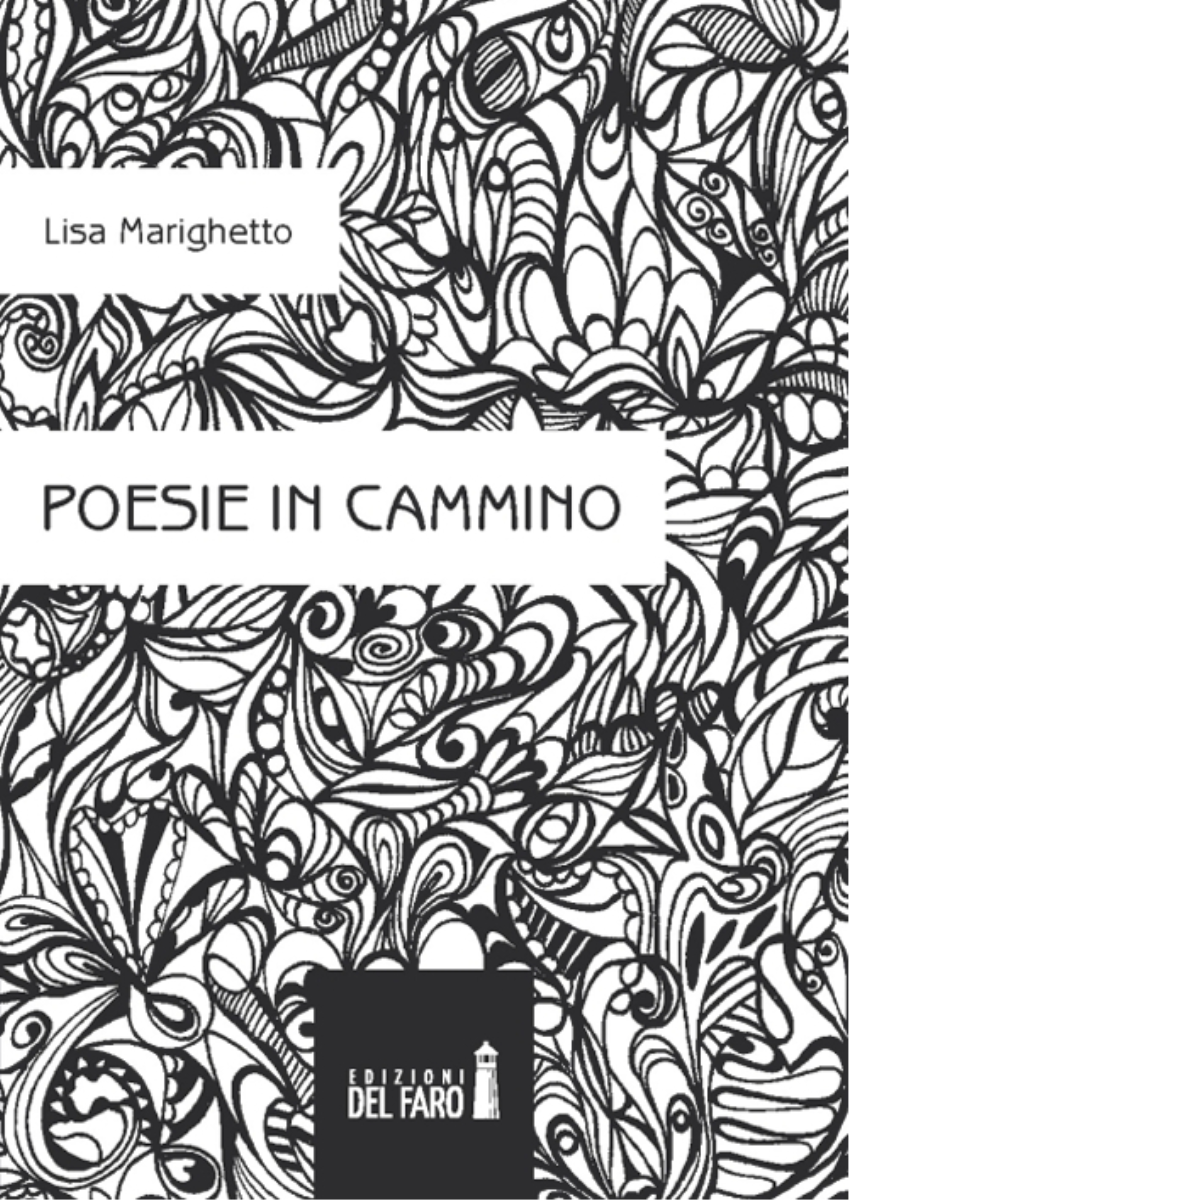 POESIE IN CAMMINO di Marighetto Lisa - Edizioni Del faro, 2014 libro usato